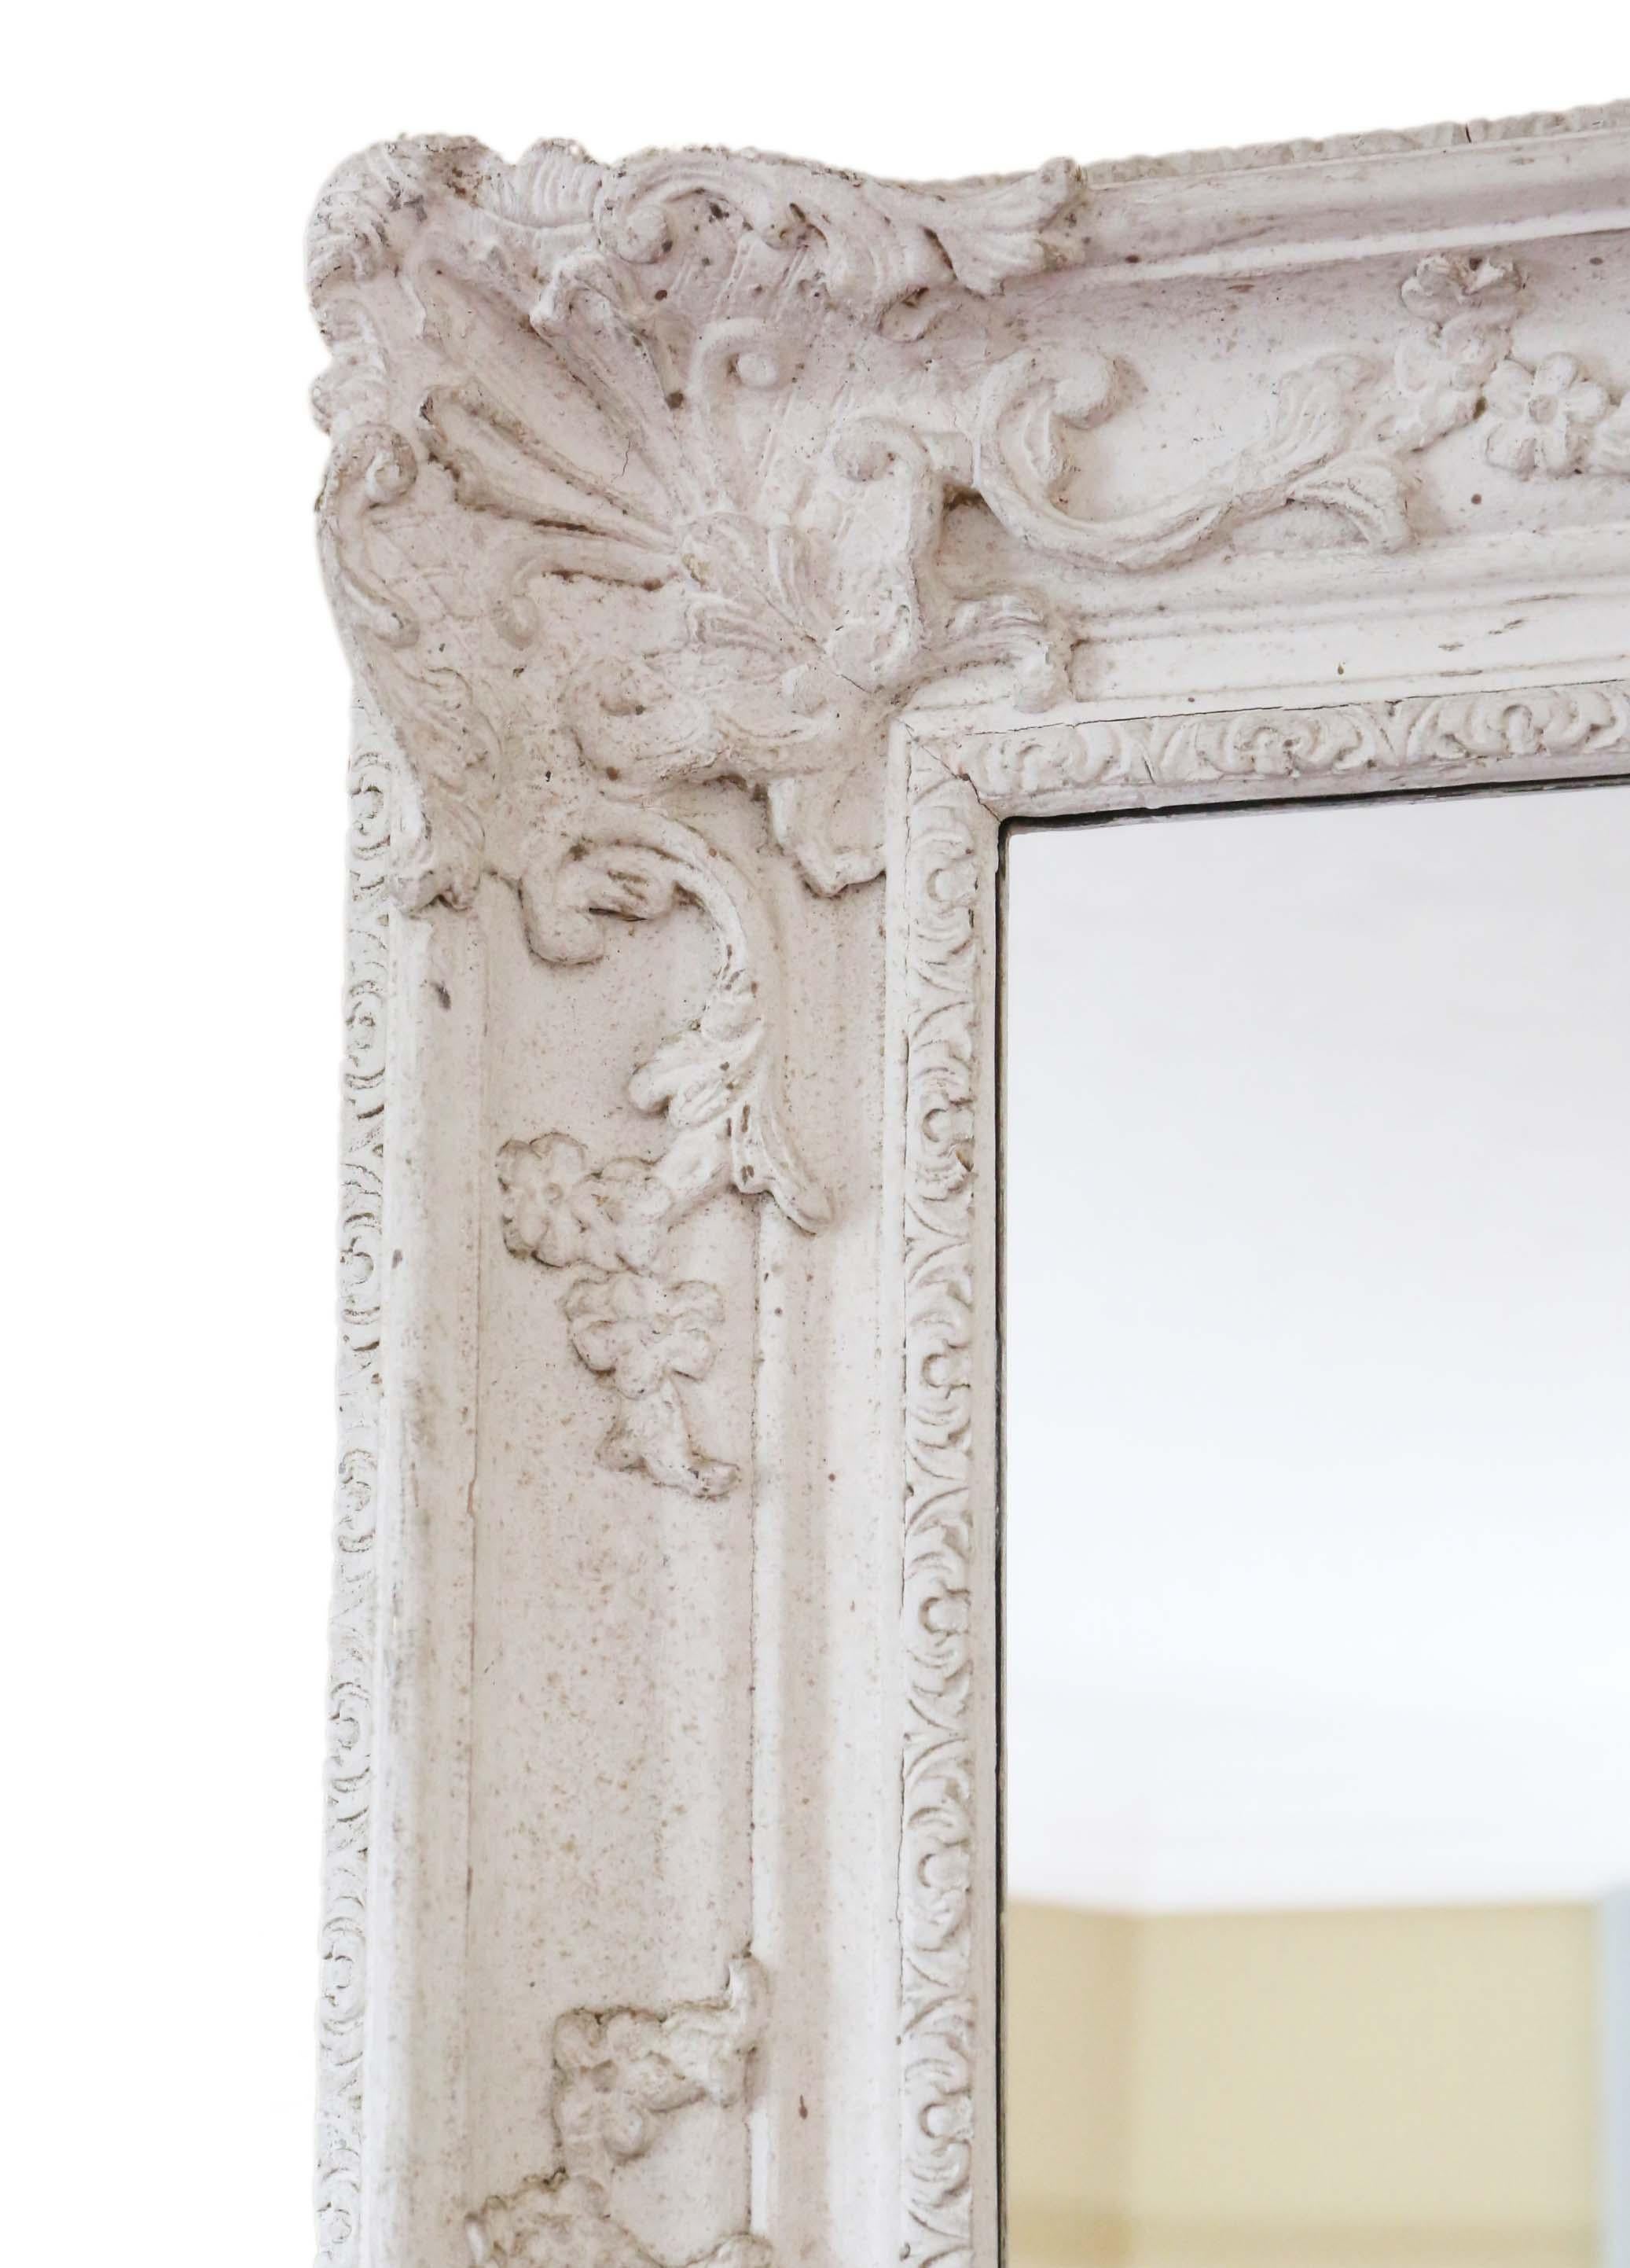 Großer natürlicher Gesso-Spiegel in antiker Qualität (mit viel Alterung und Patina), Mitte des 20. Jahrhunderts, mit viel Charme und Eleganz. Kann im Hoch- oder Querformat aufgehängt werden.

Ein beeindruckender und seltener Fund, der an der